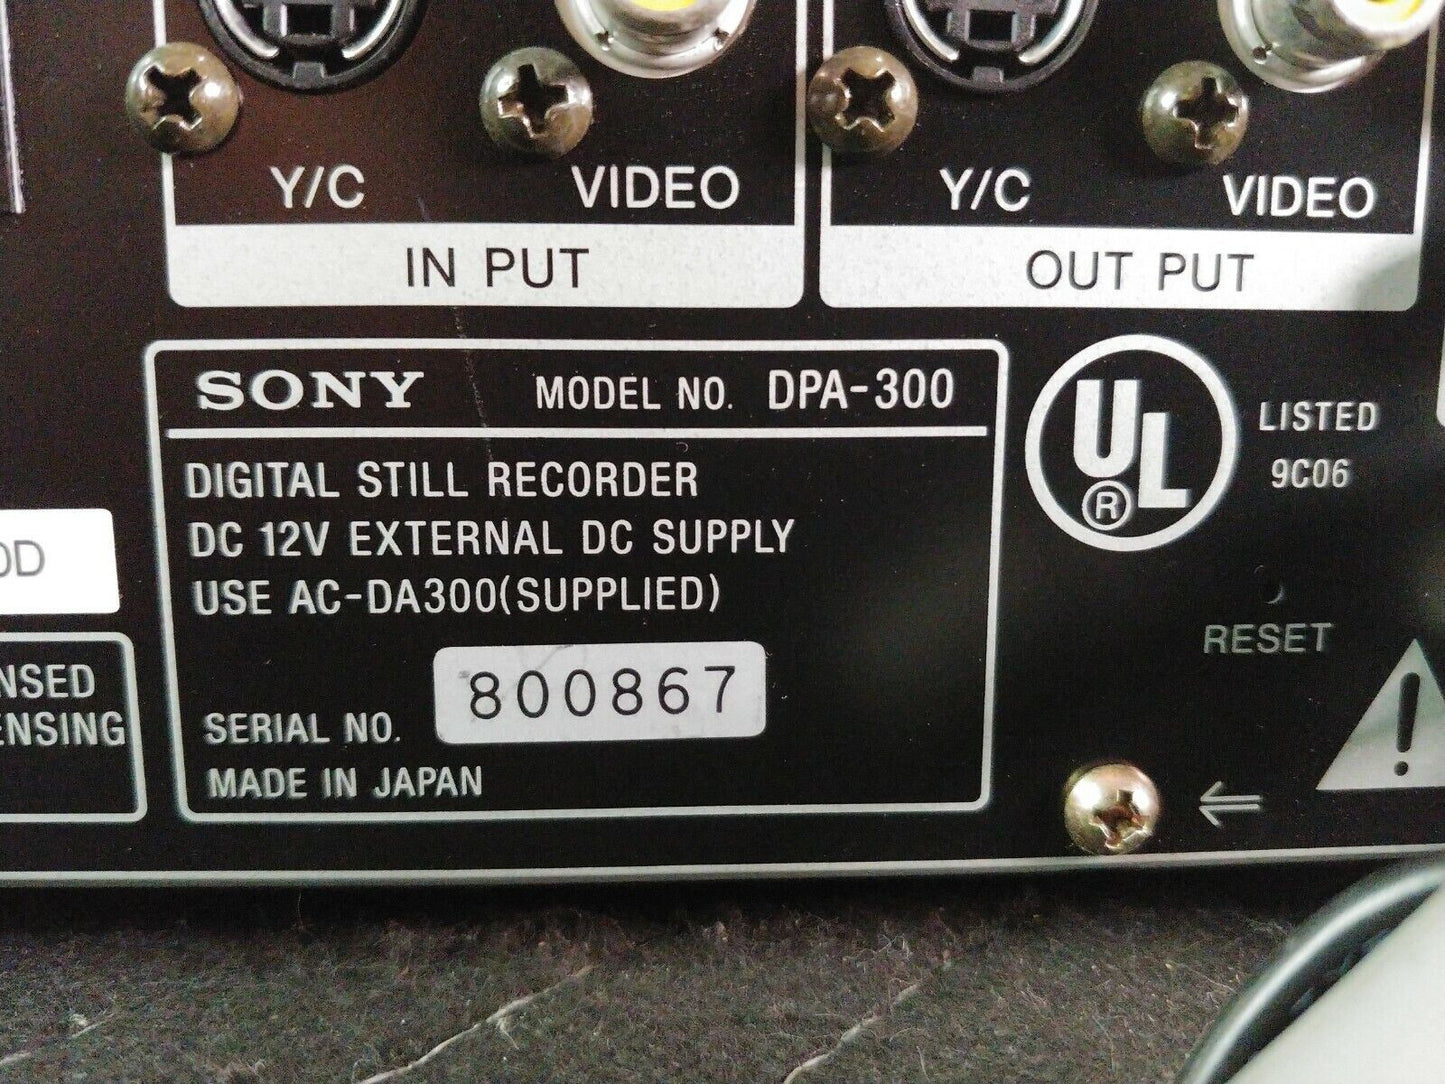 Sony DPA-300 Digital Still Image Recorder 